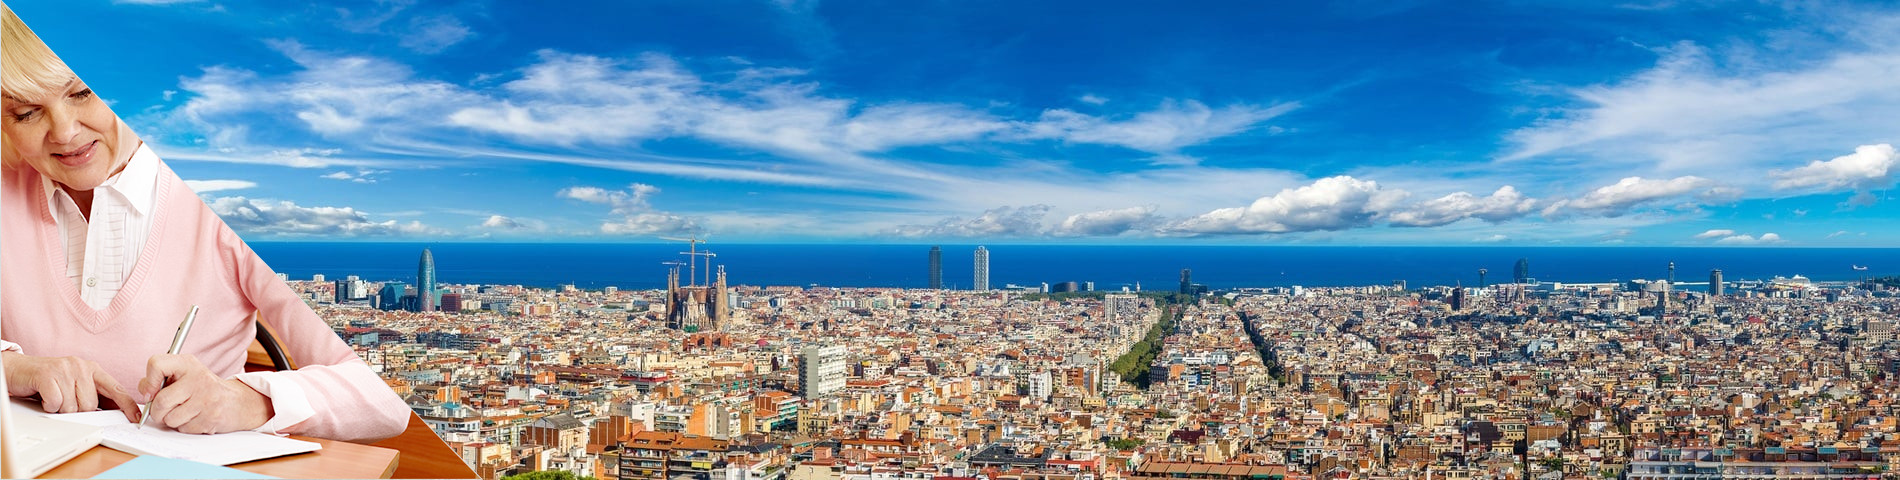 Барселона - Курси для людей зрілого віку (50+)